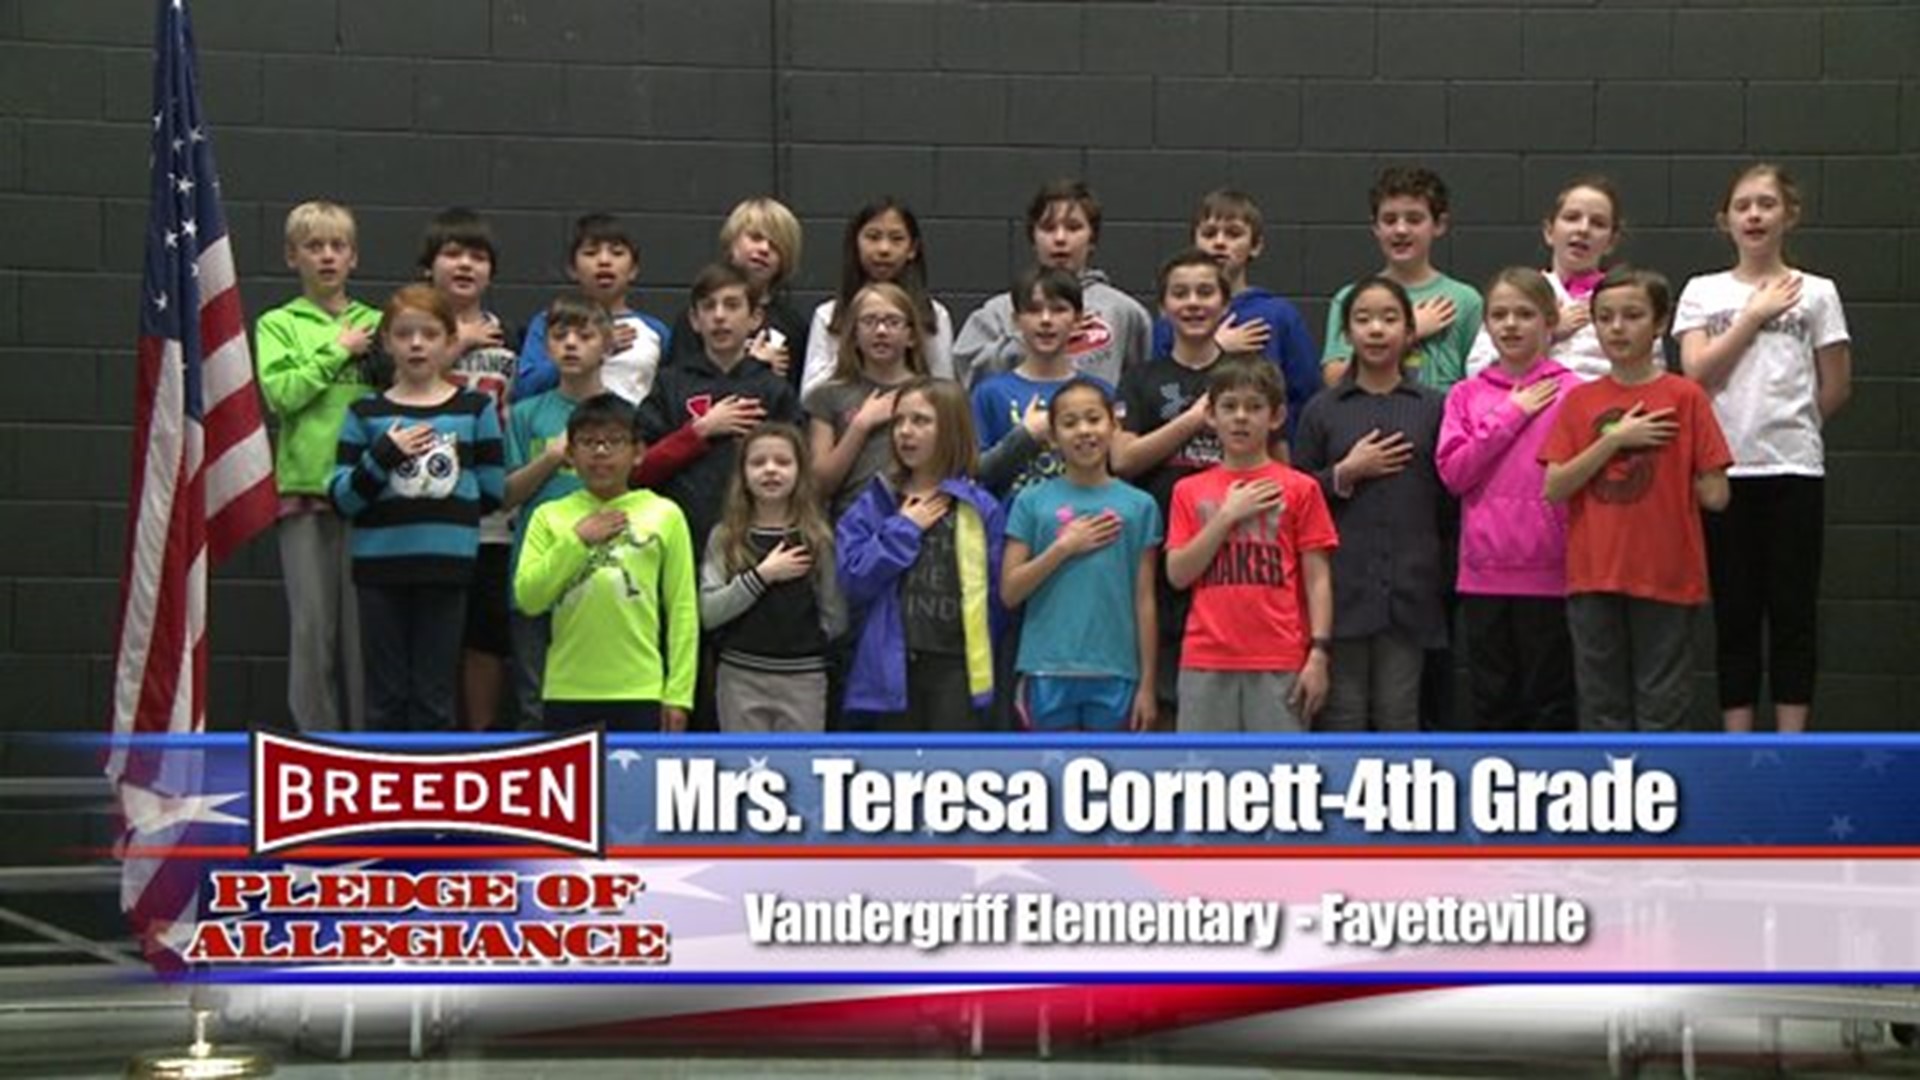 Vandergriff Elementary - Fayetteville, Mrs. Cornett - Fourth Grade